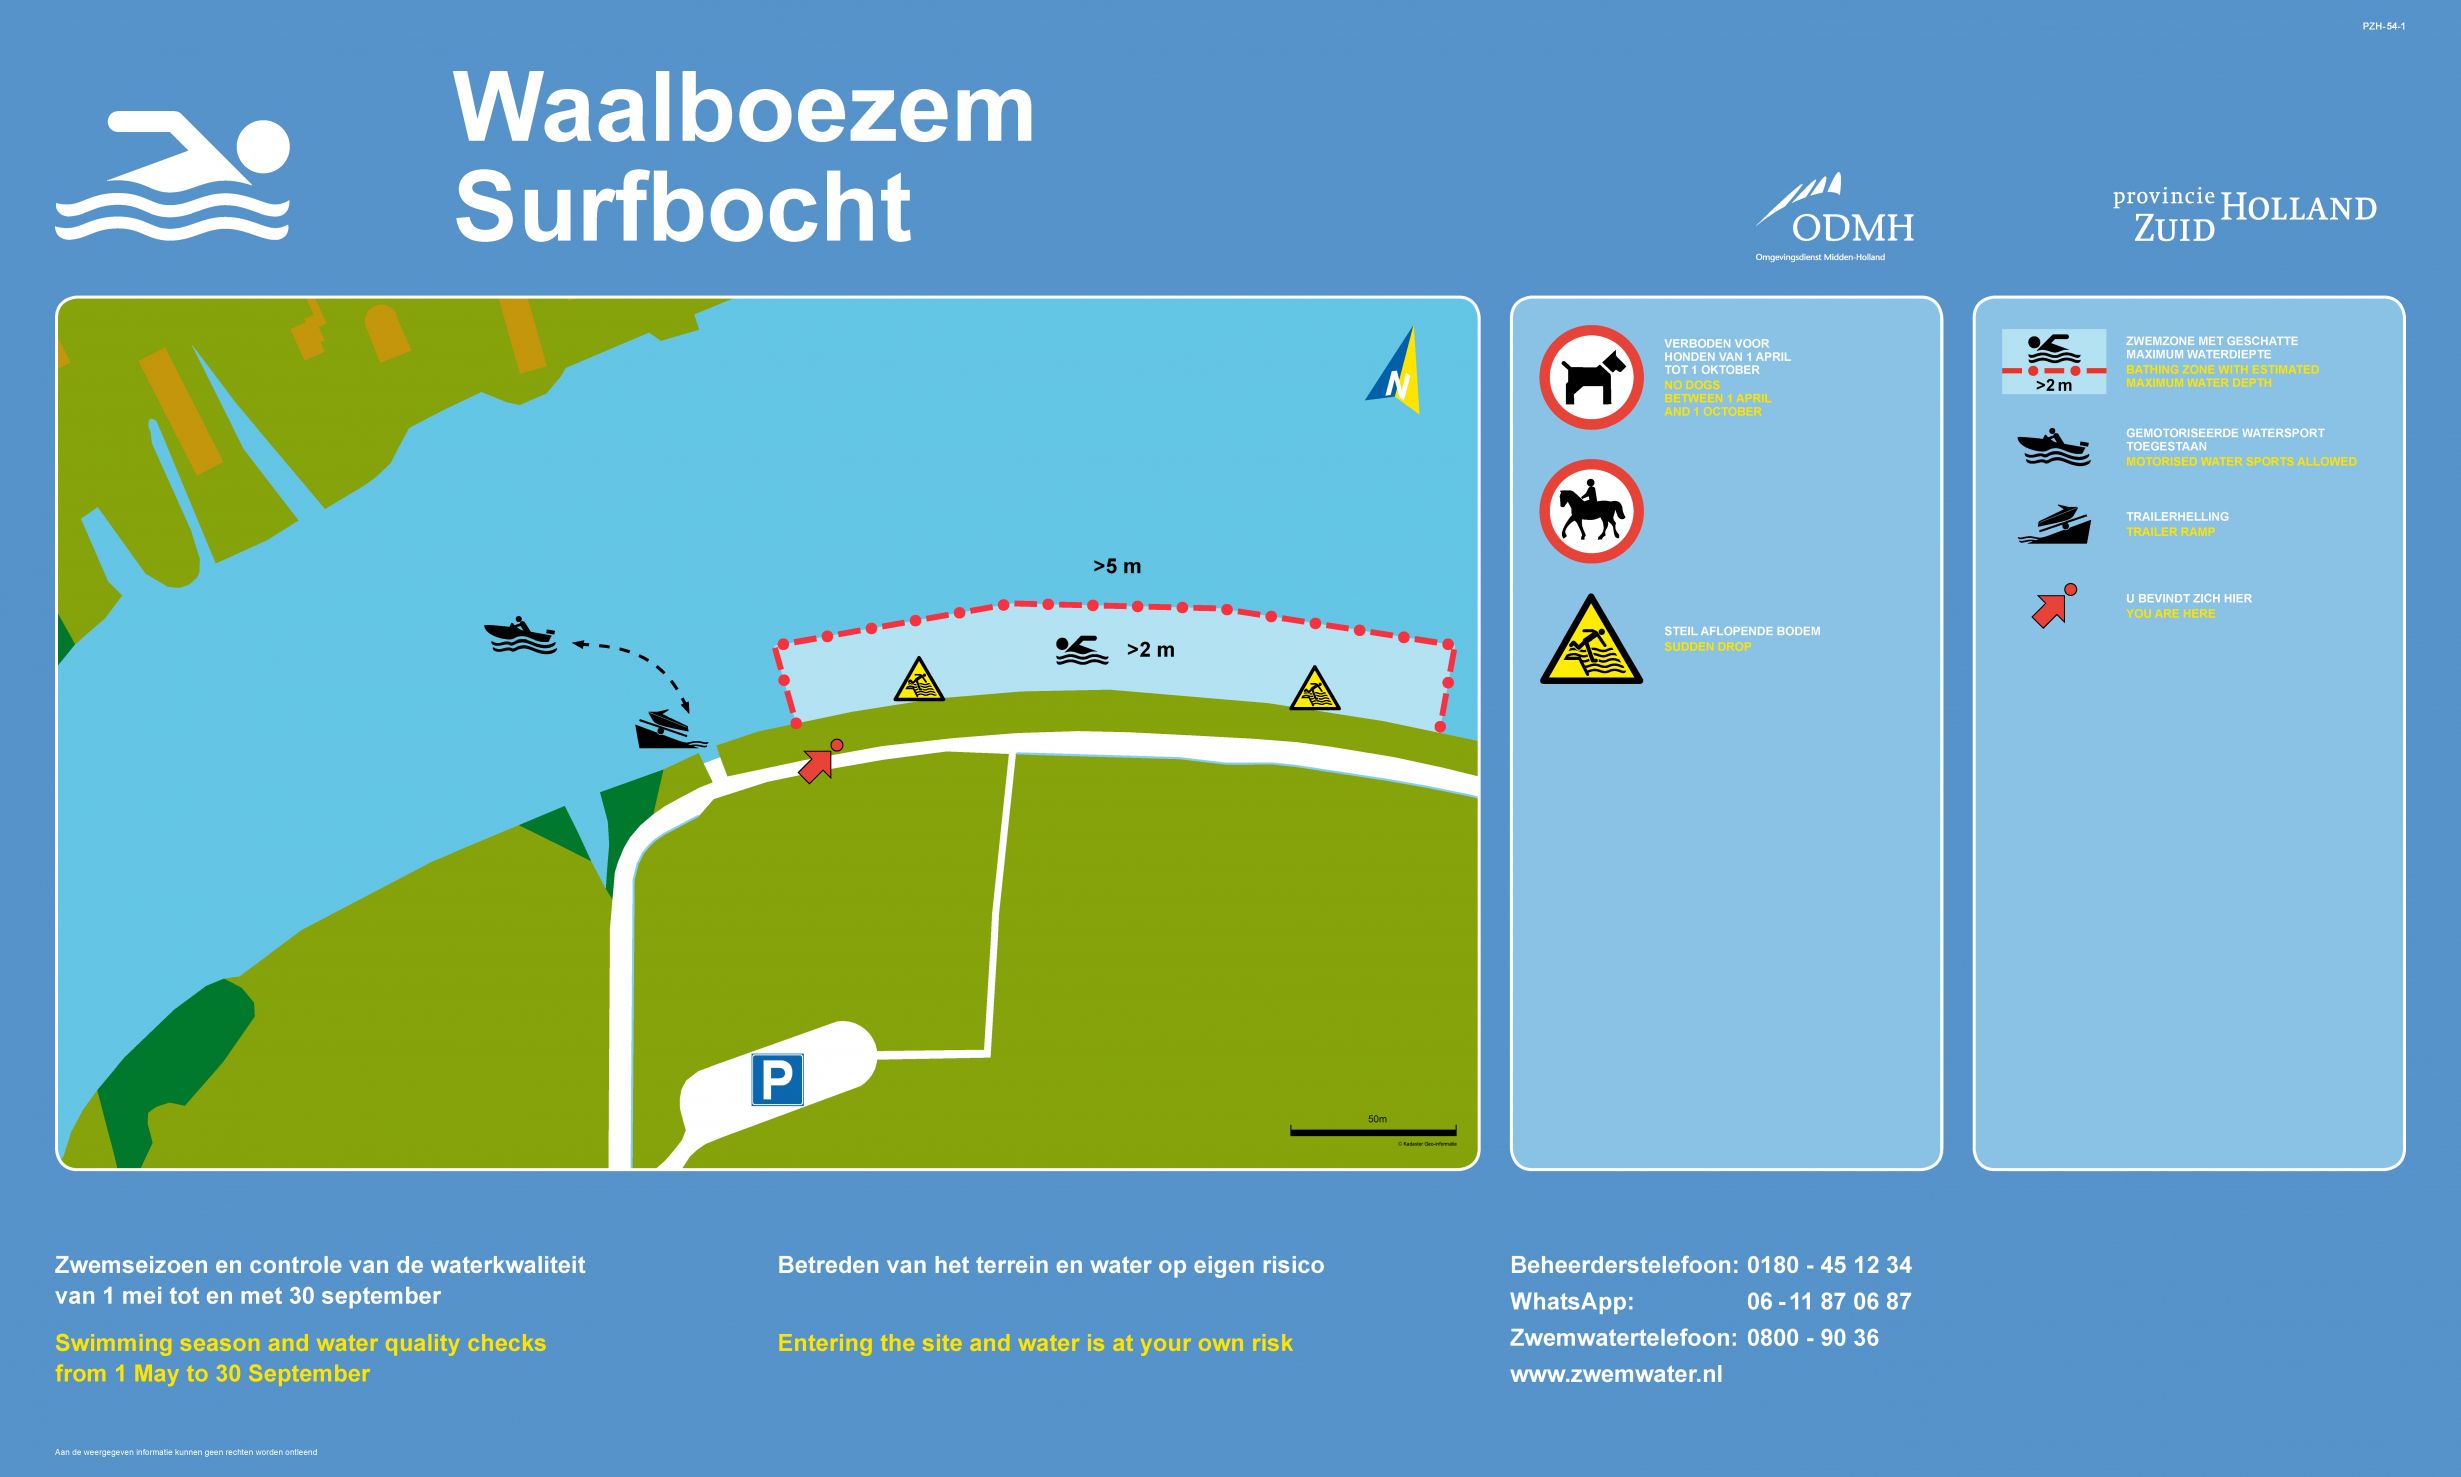 Het informatiebord bij zwemlocatie Waalboezem Surfbocht